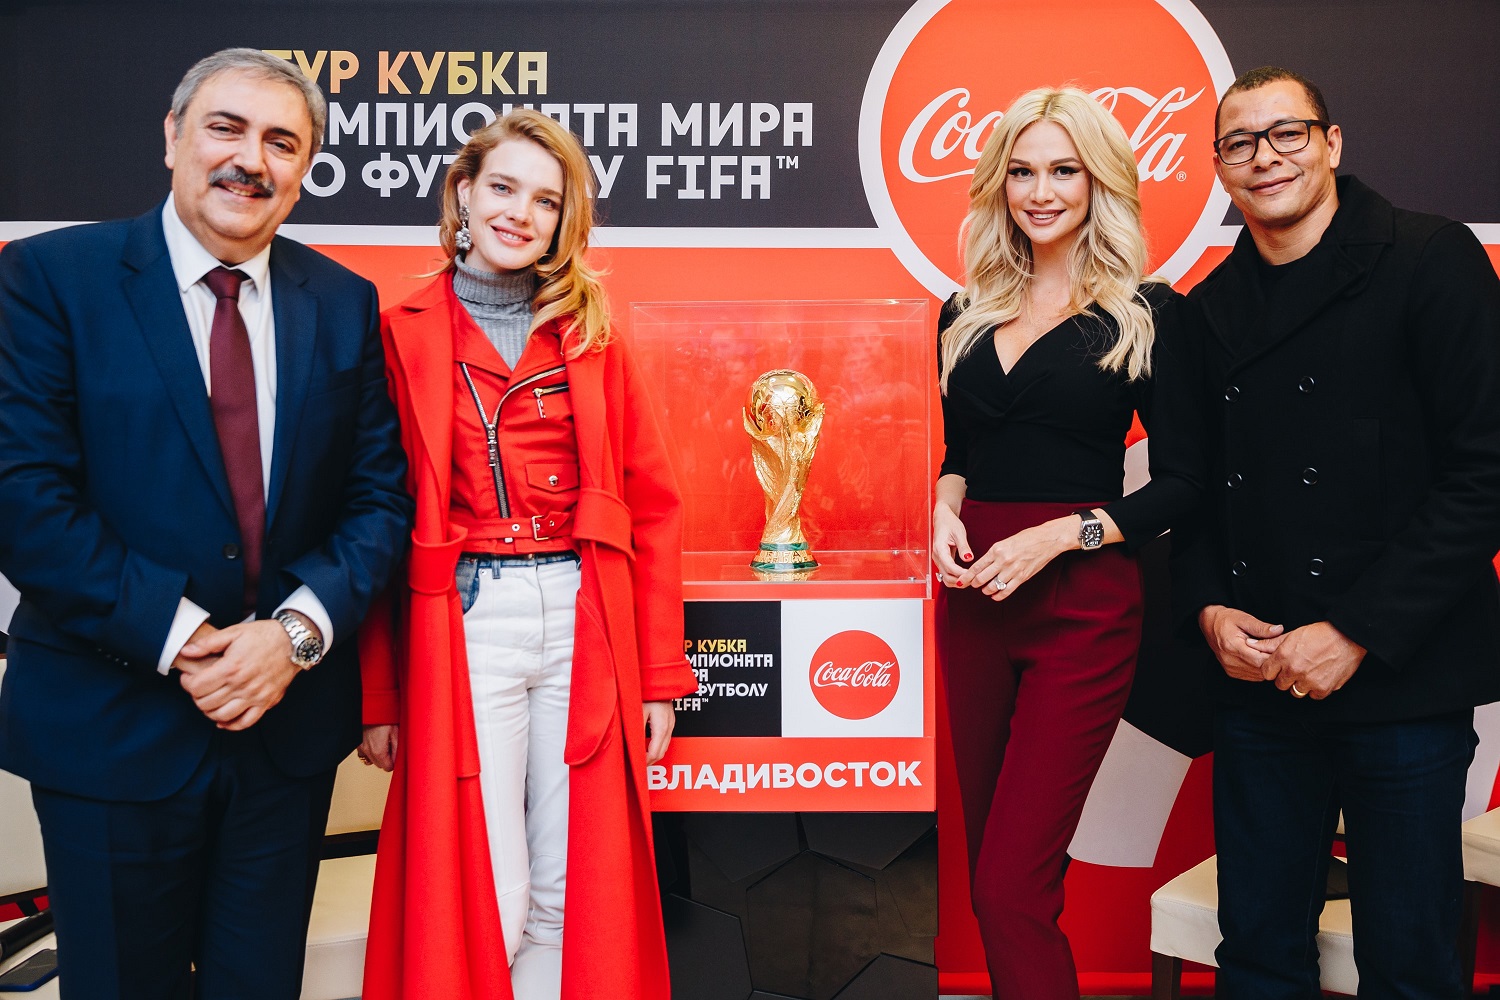 Кубок FIFA прибудет в Нижний Новгород 20 мая - фото 1